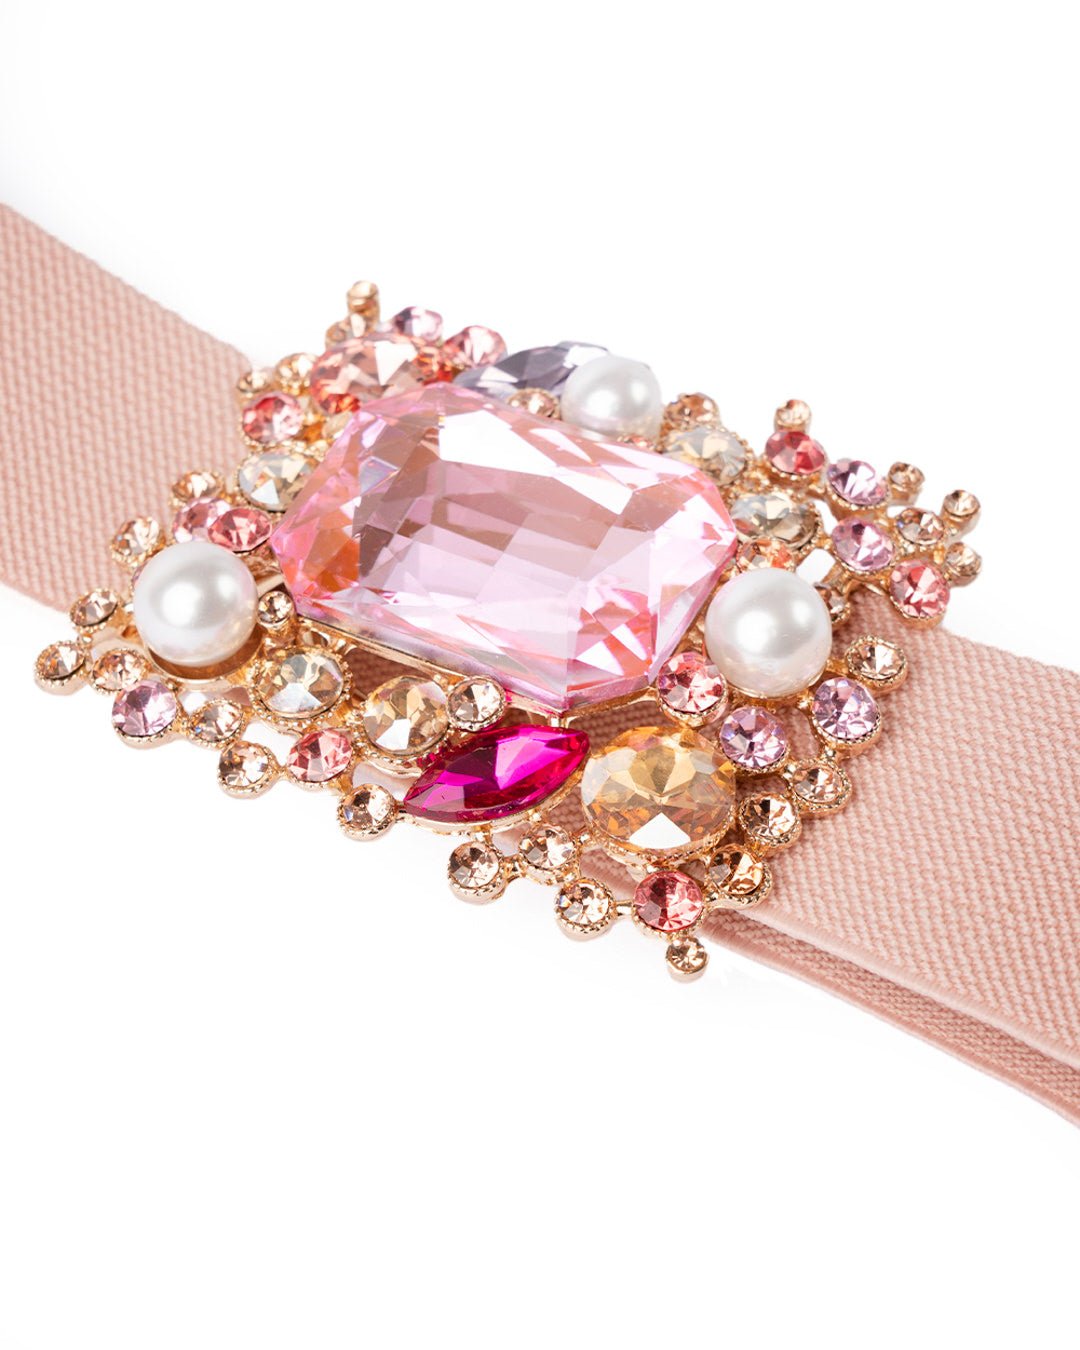 Cintura elastica con medaglione rettangolare di pietre in resina rosa - Mya Accessories